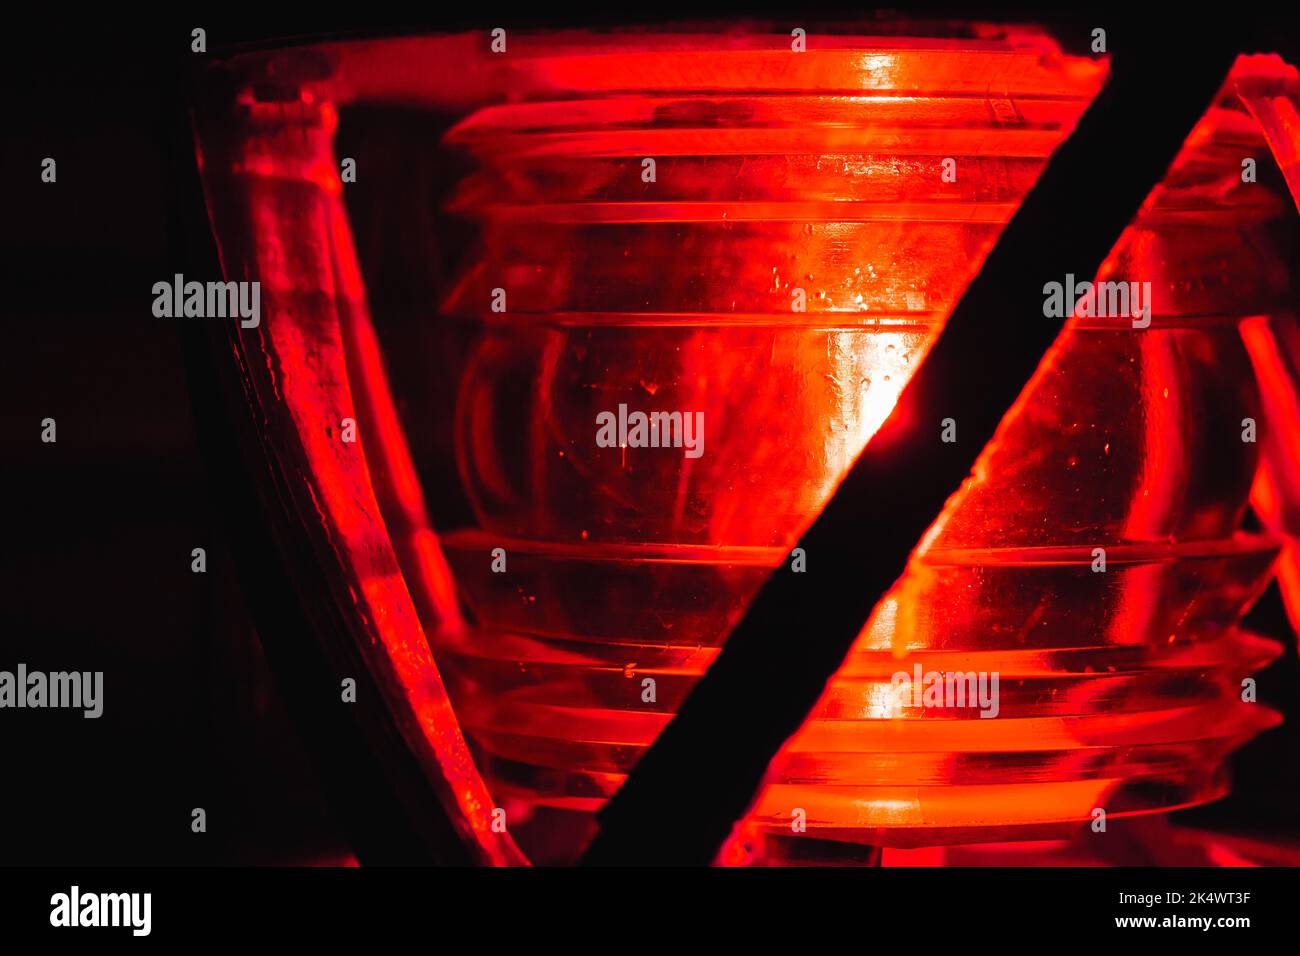 La lampe rouge brille dans un cadre métallique sur le dessus d'un phare, photo de gros plan avec une mise au point douce sélective Banque D'Images